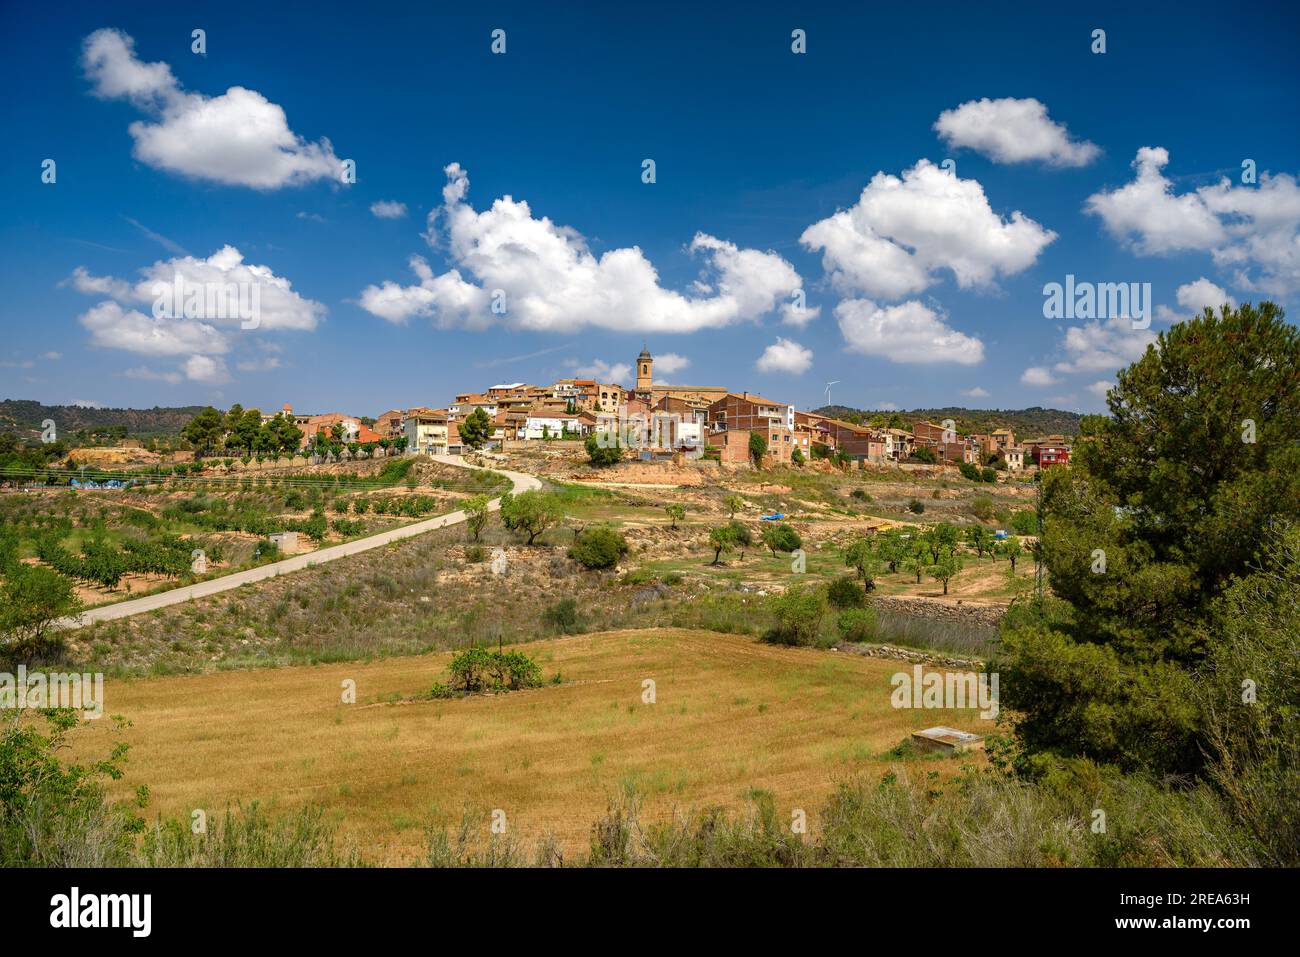 Villaggio di Bovera, su una collina, circondato da campi e alberi da frutto (Les Garrigues, Lleida, Catalogna, Spagna). Esempio: Pueblo de Bovera, en una colina, Lérida Foto Stock